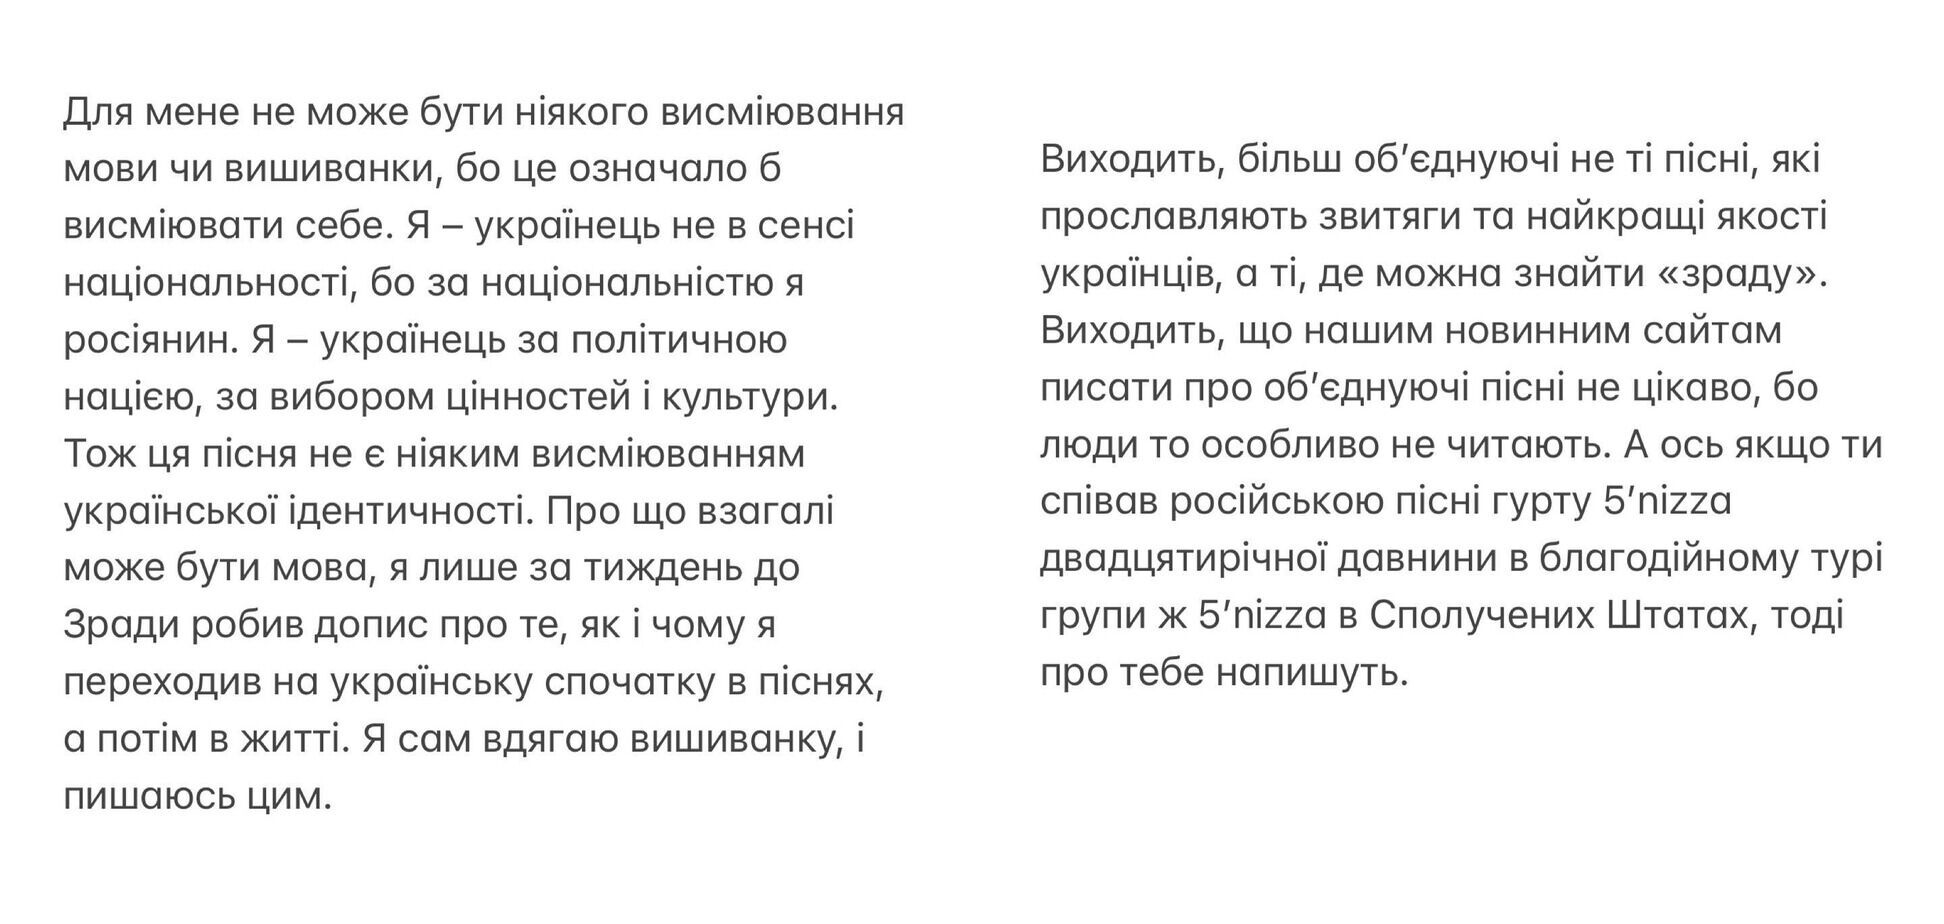 "По национальности я россиянин": Бабкин расхвалил самого себя, оправдываясь за "Зраду", и упрекнул украинцев